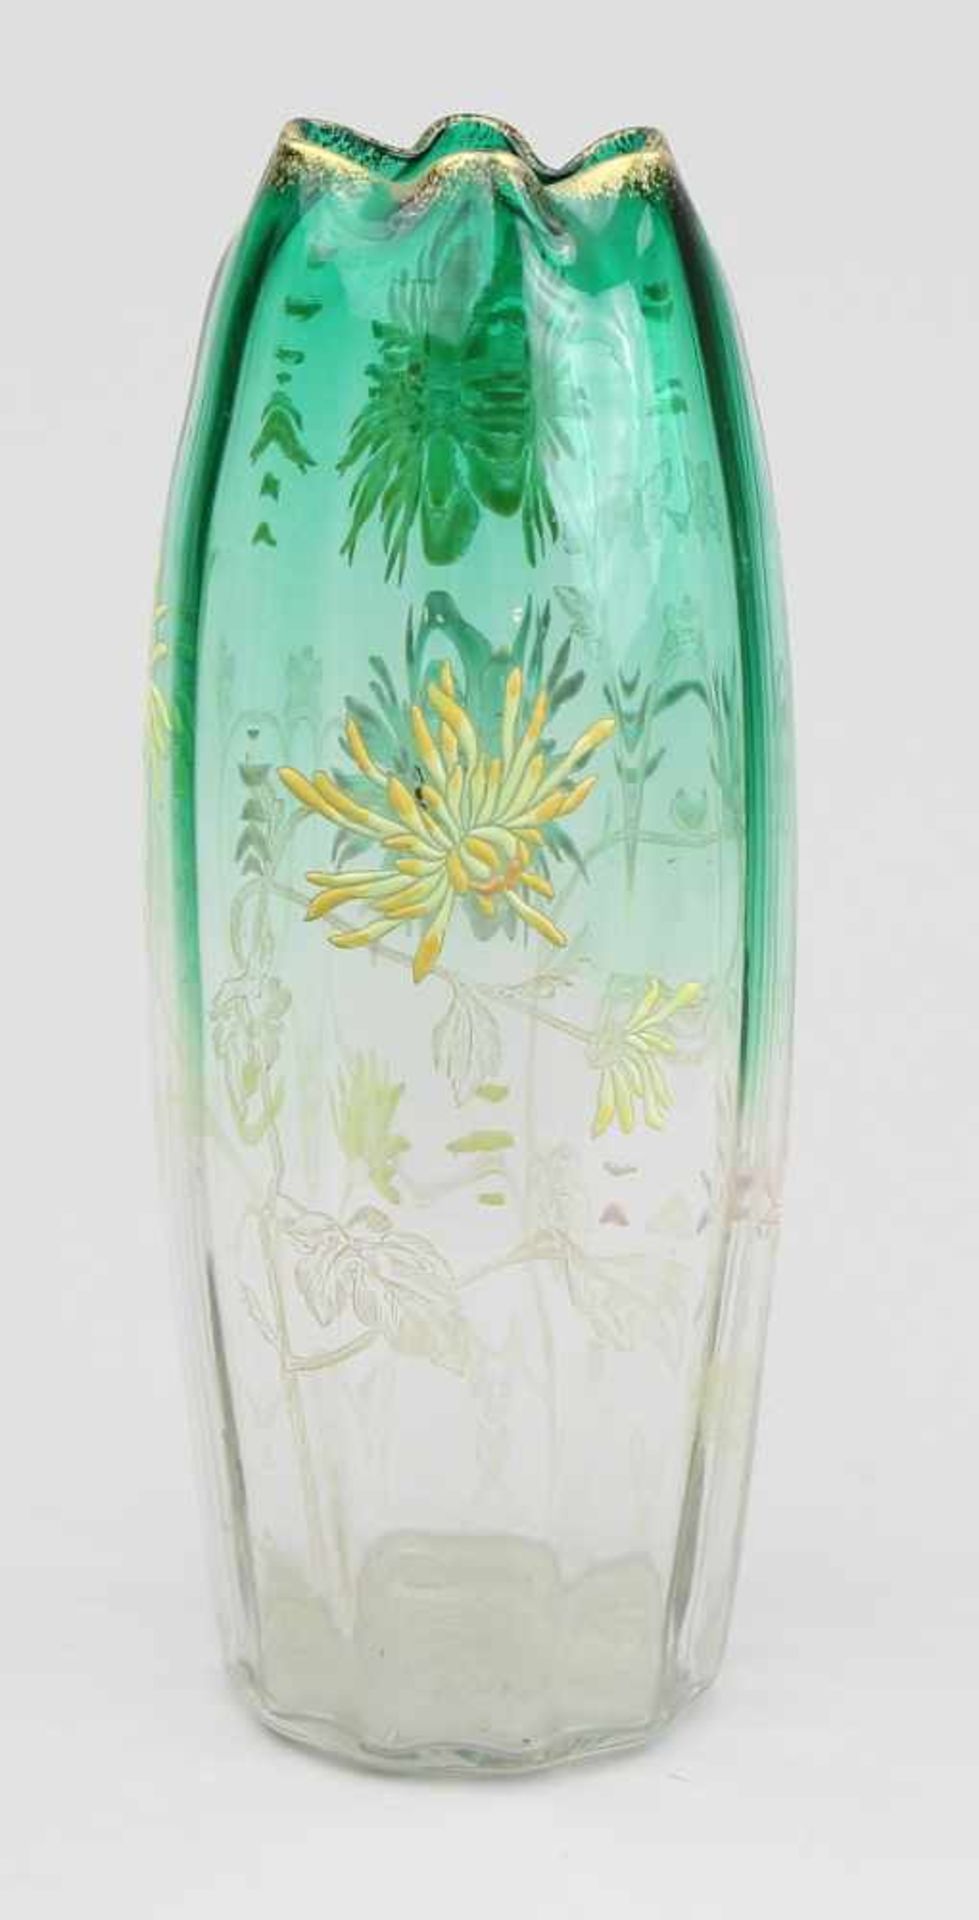 Legras - Vase Farbloses und grünes Glas modelgeblasen, pastose farbige Emailbemalung mit - Bild 2 aus 3